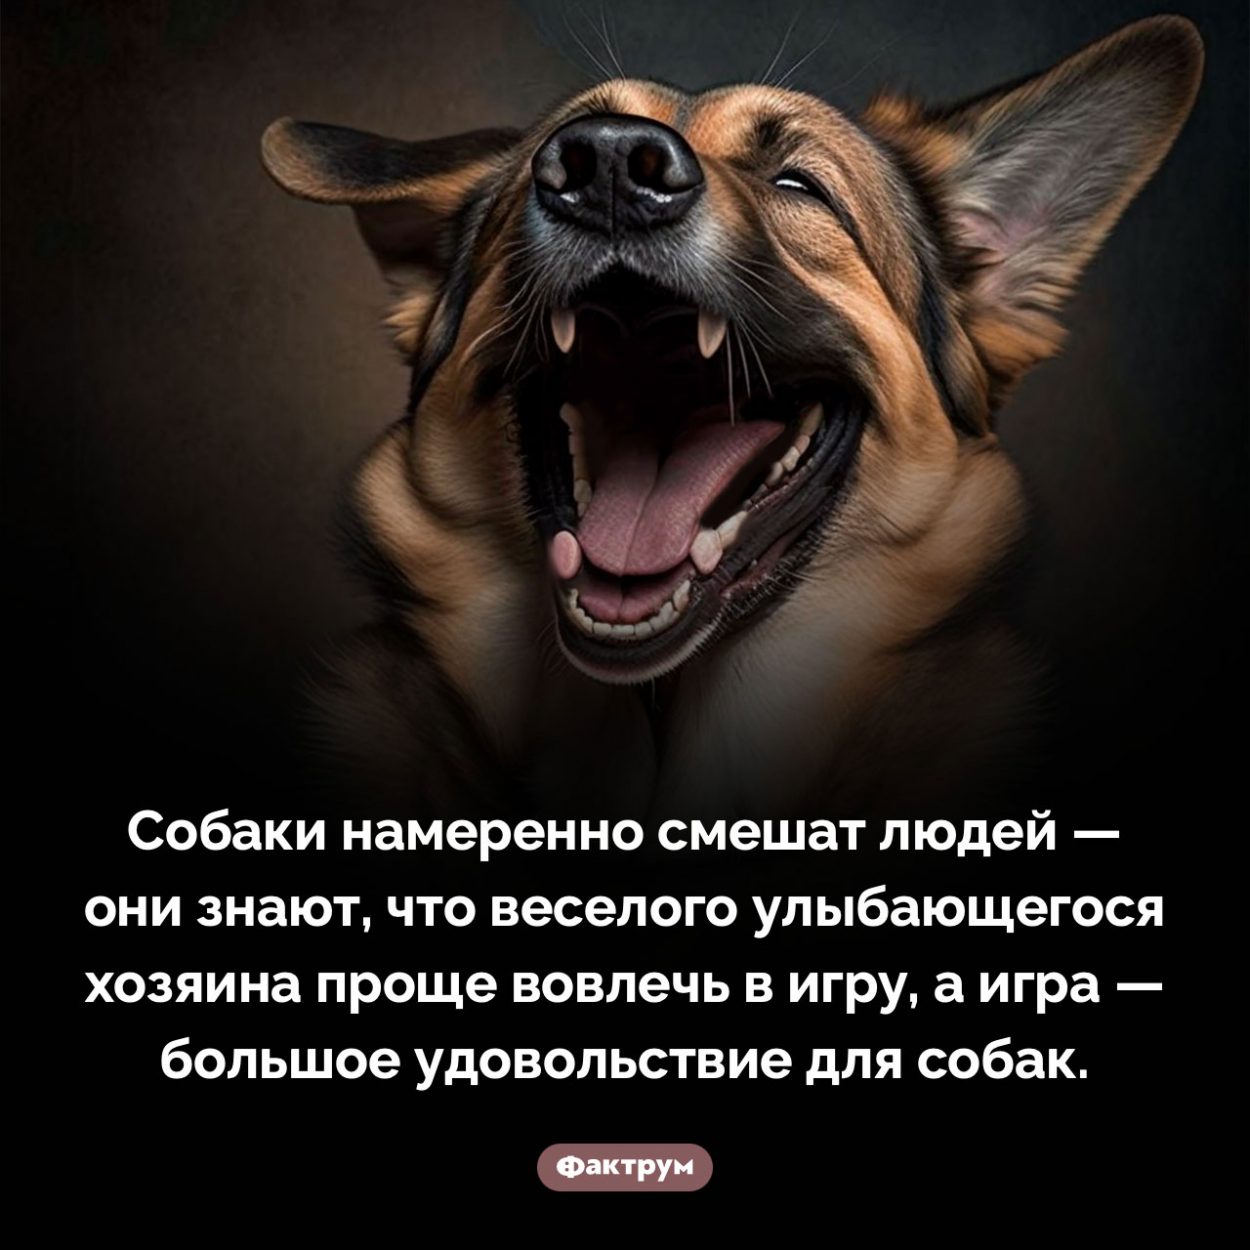 Ваша собака намеренно смешит вас. Собаки намеренно смешат людей — они знают, что веселого улыбающегося хозяина проще вовлечь в игру, а игра — большое удовольствие для собак.